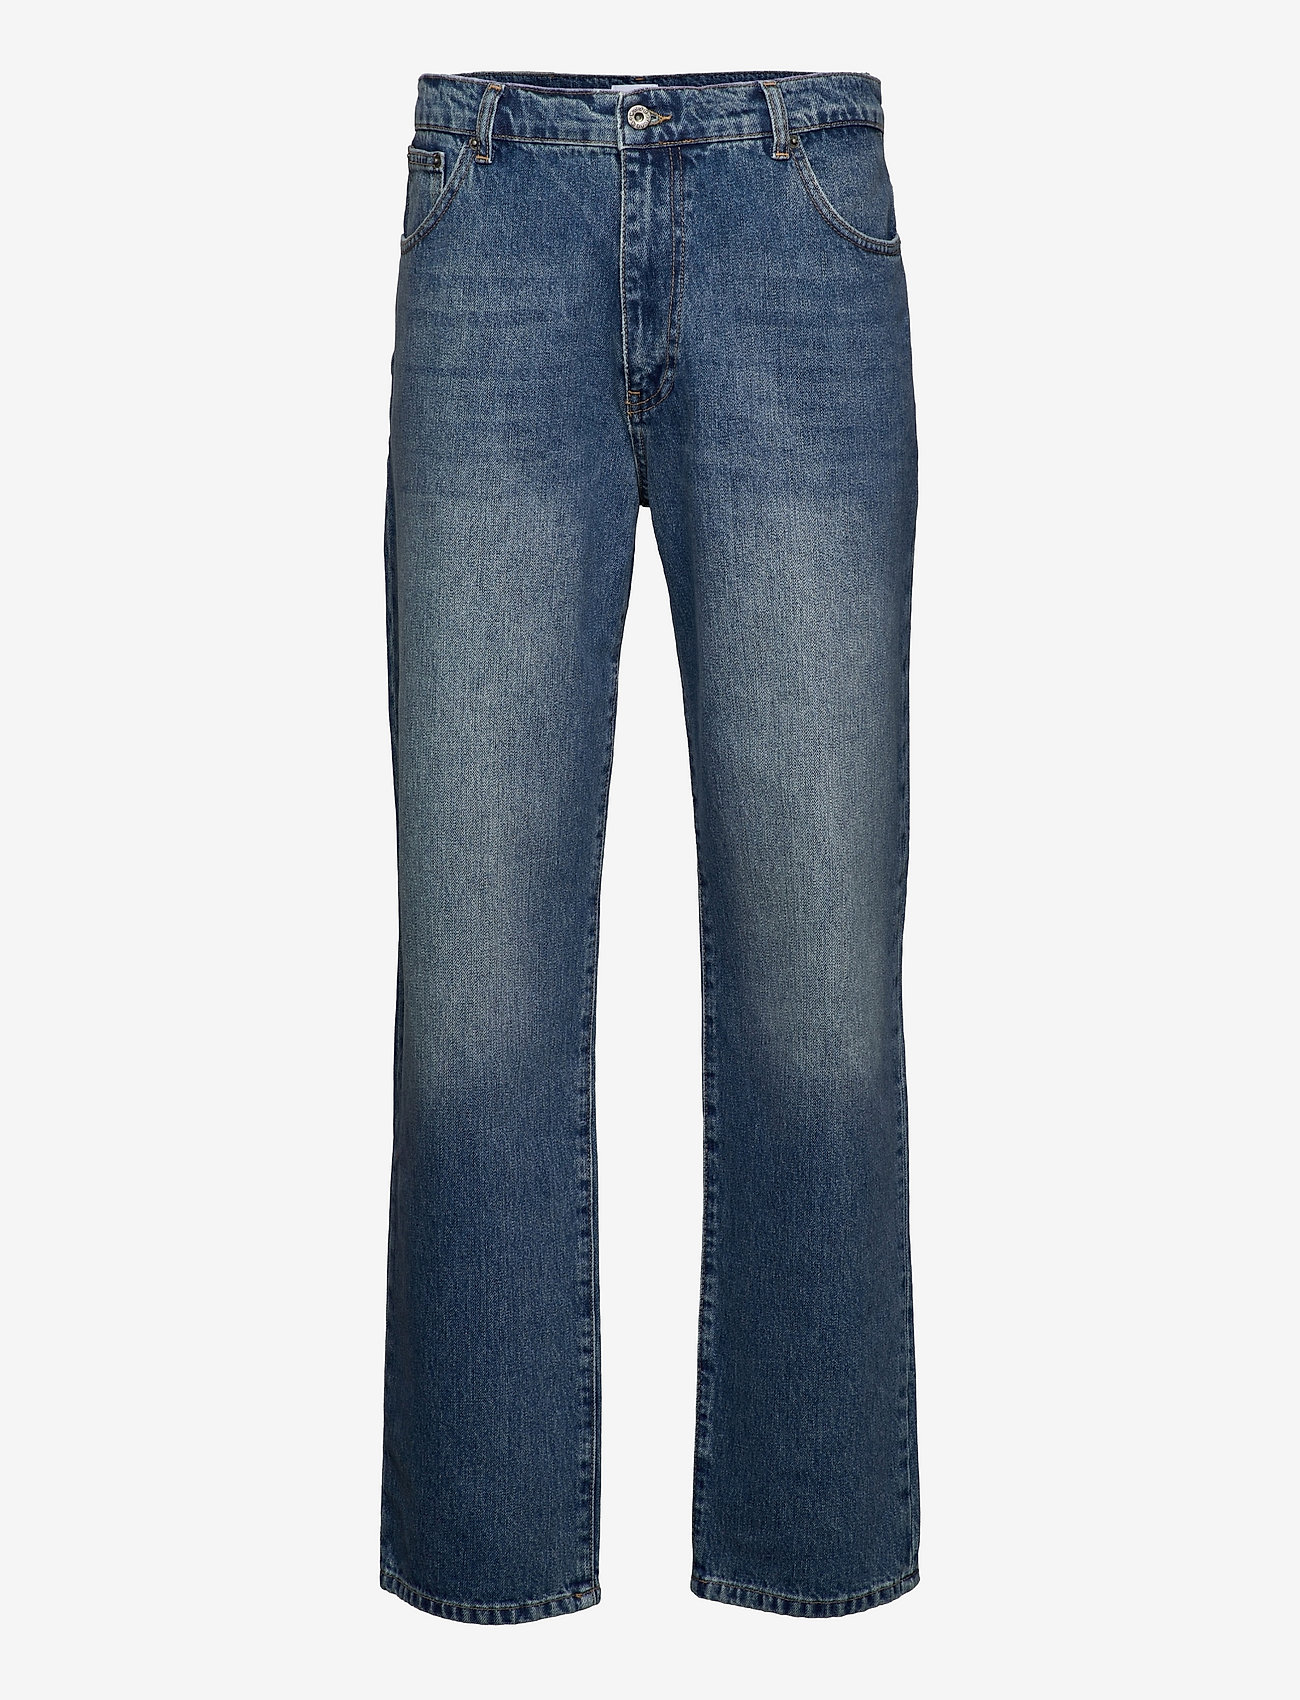 Woodbird - Leroy Blue Vintage Jeans - chemises basiques - light blue - 1